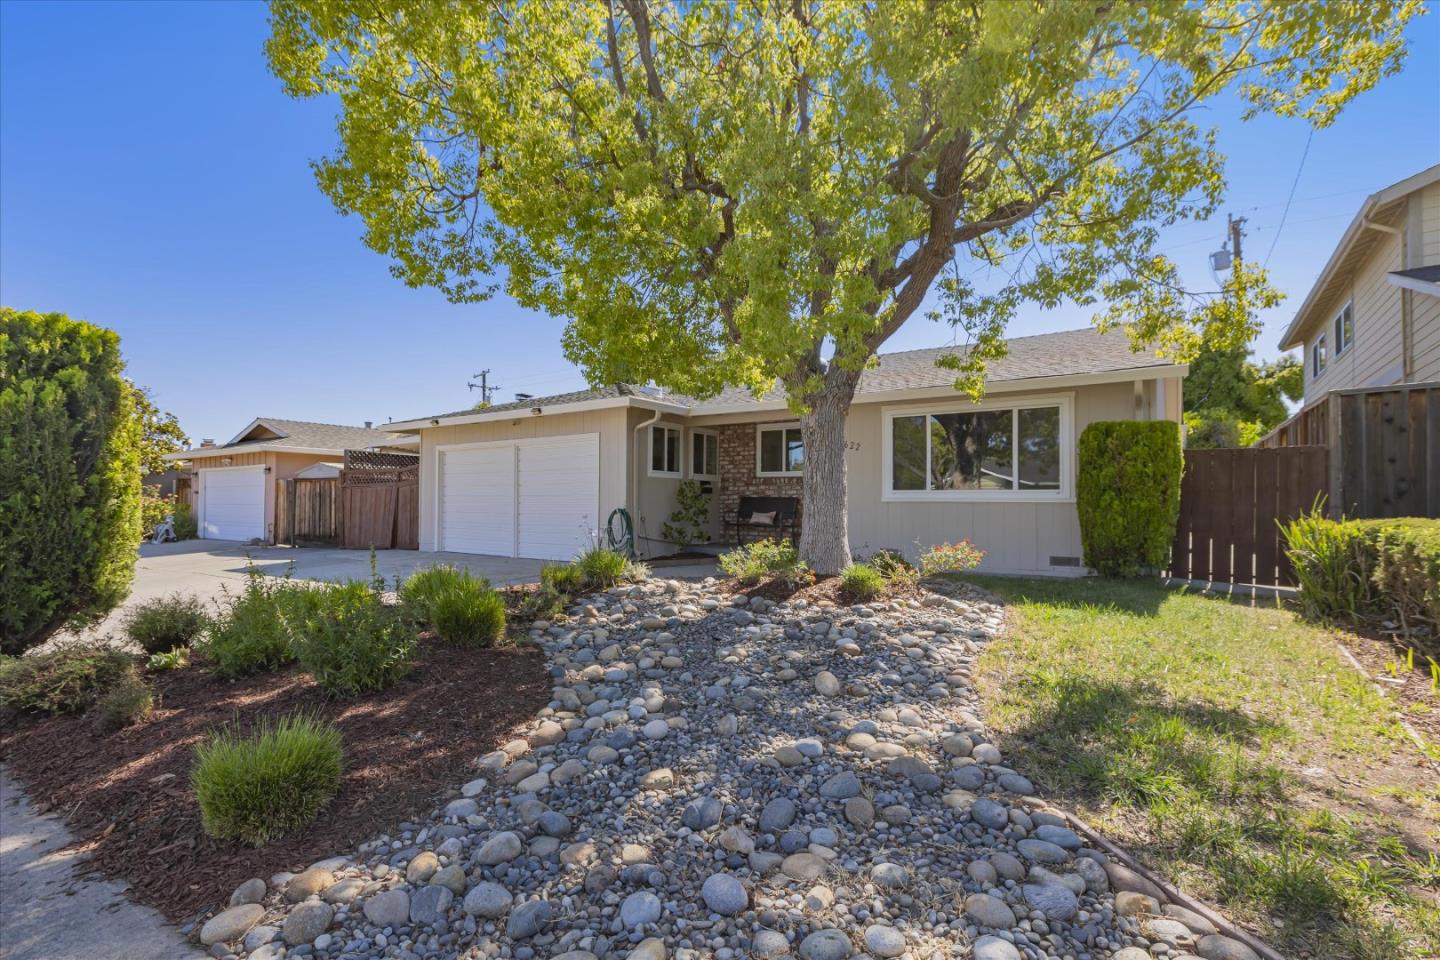 Property: 5622 Drysdale Drive,San Jose, CA